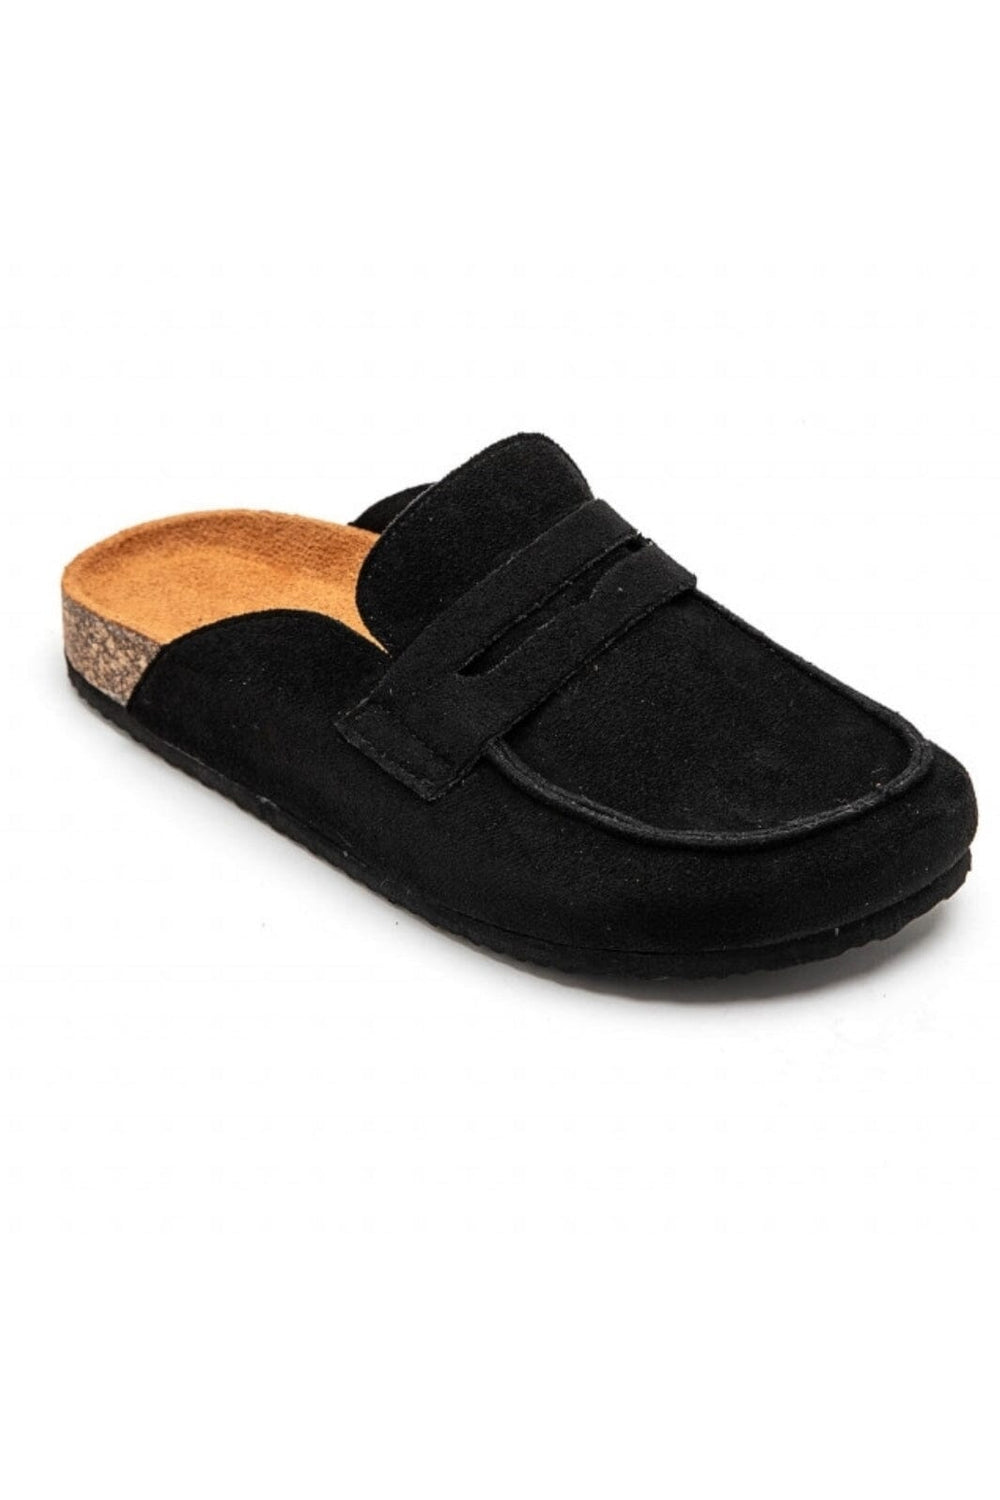 Marta Du Chateau - Ladies Shoes 7218 - Black Loafers 